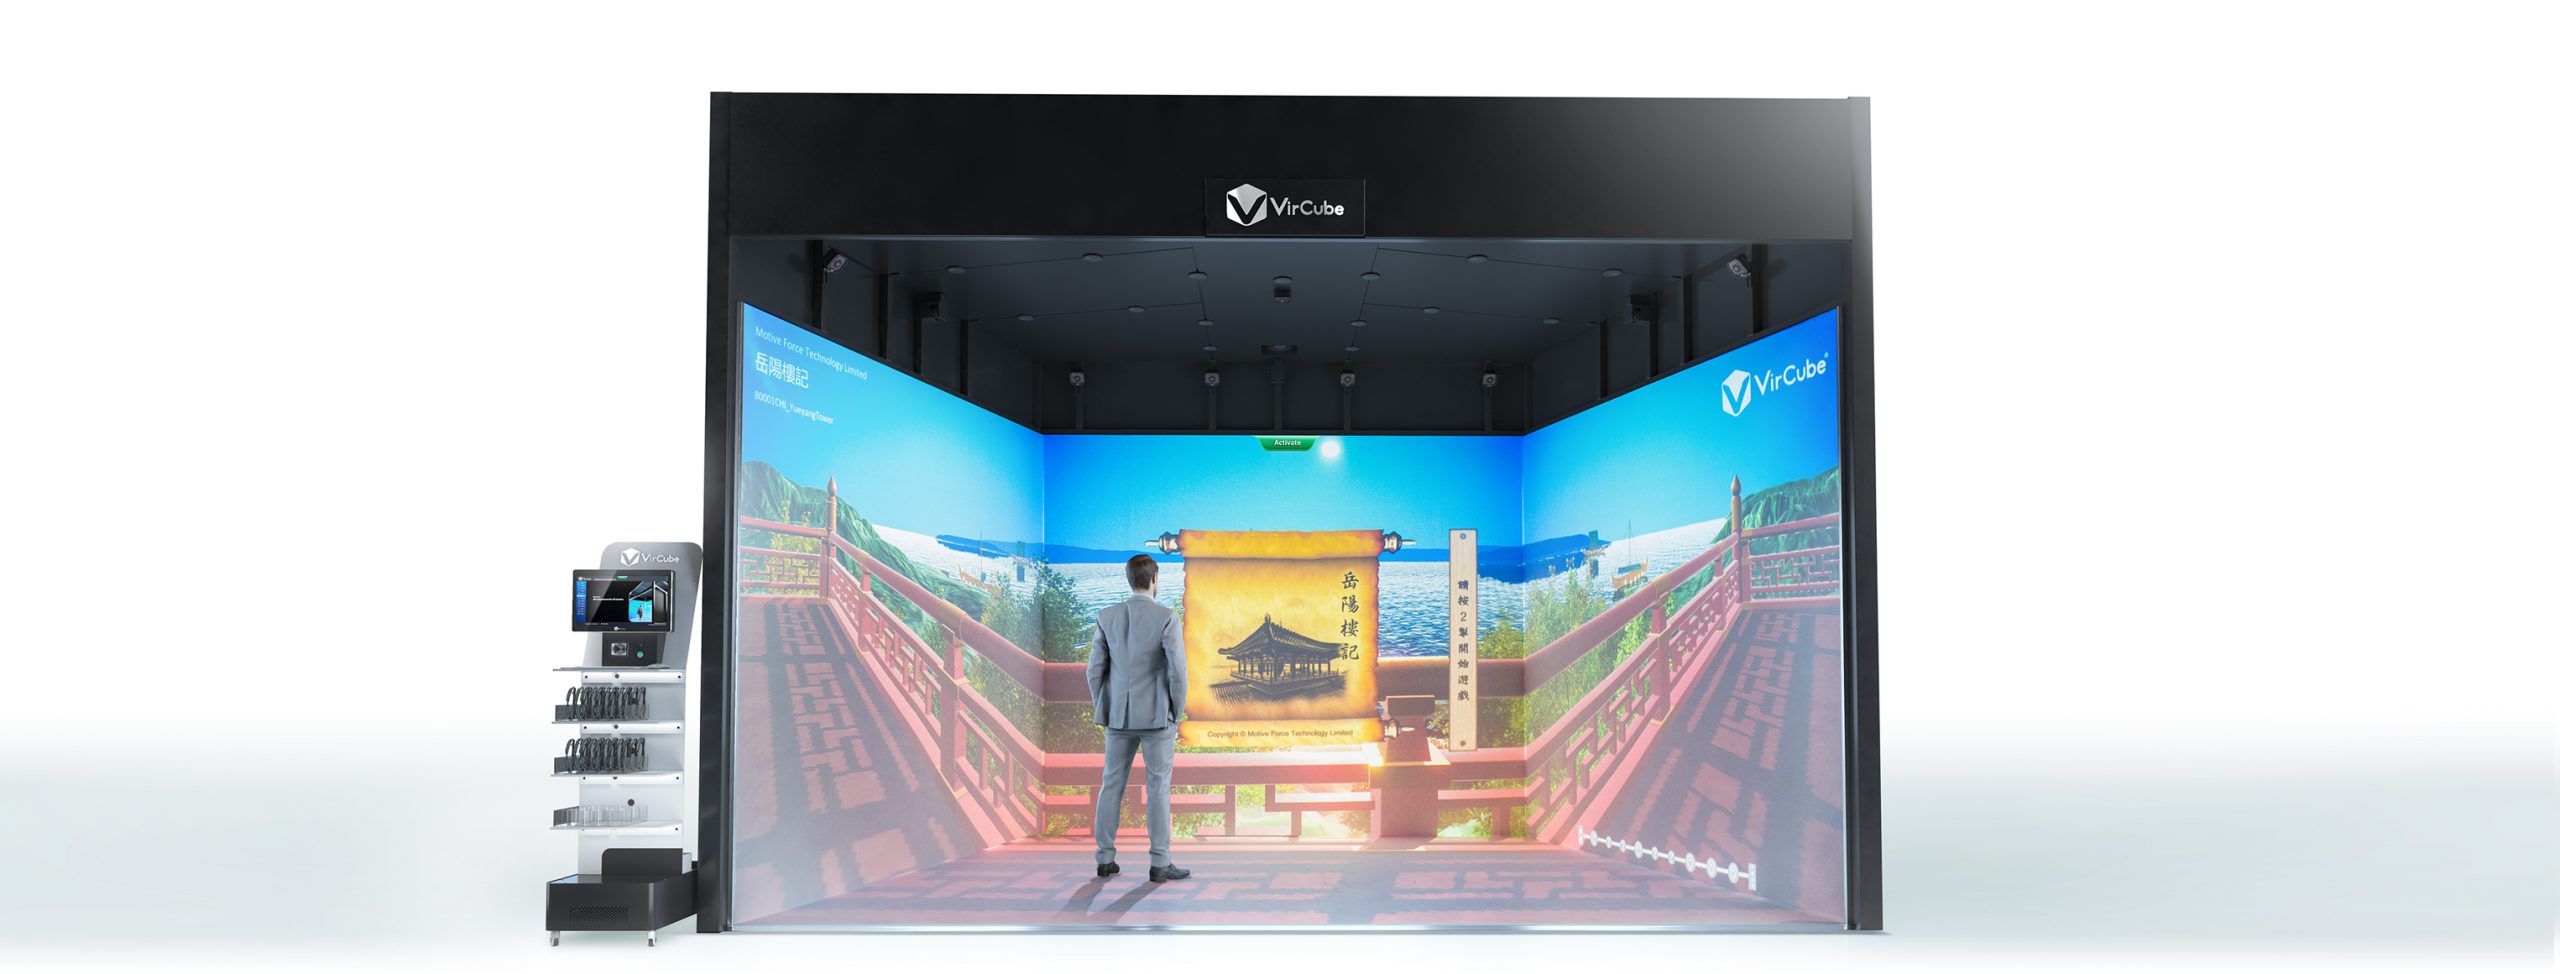 在虛擬實境應用空間VR CAVE中，呈現最真 實立體的虛擬情境